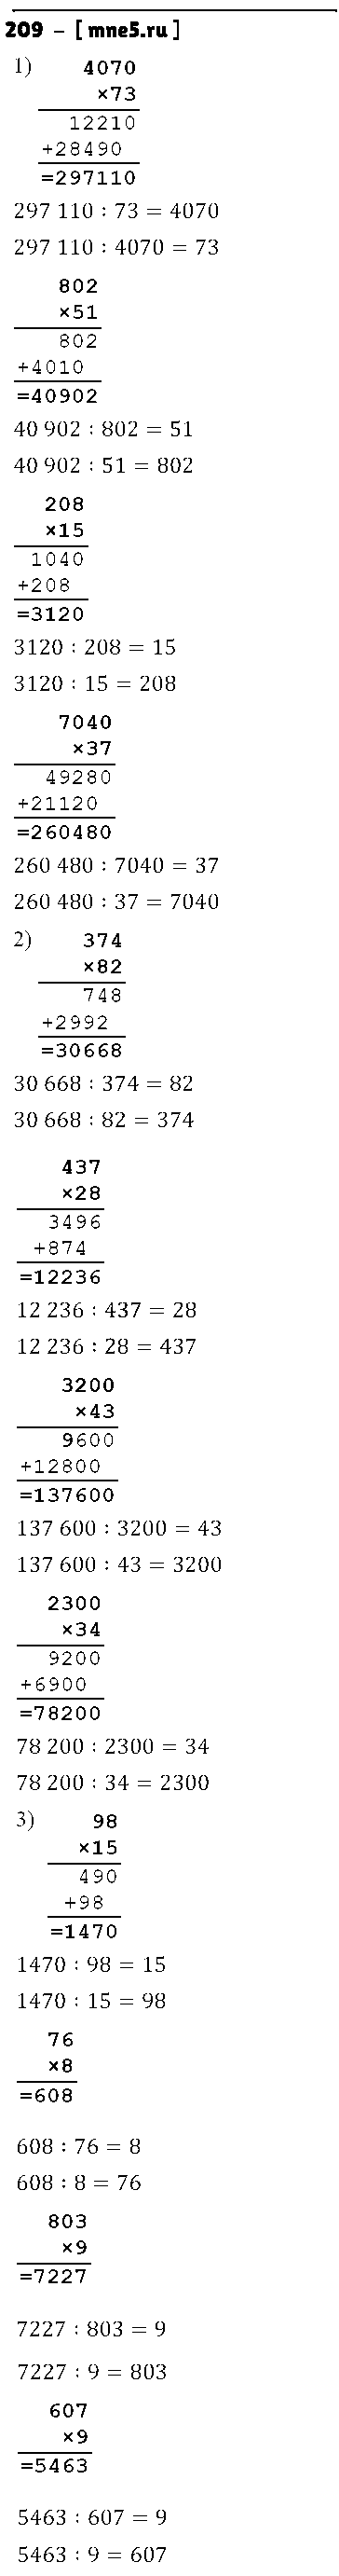 ГДЗ Математика 4 класс - 209